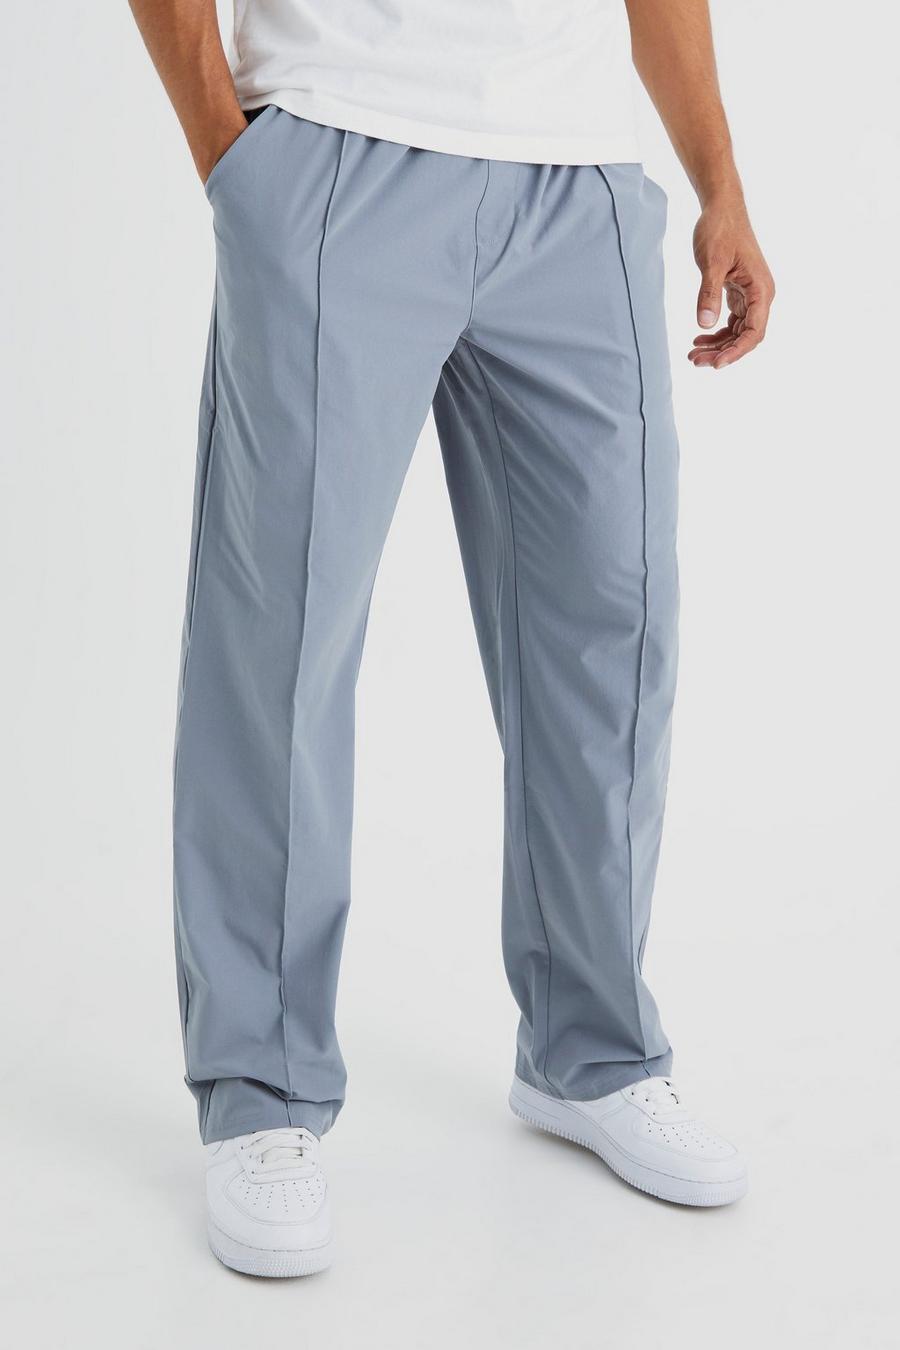 Light grey Elasticated Waist Technical Stretch Relaxed Pintuck Trouser